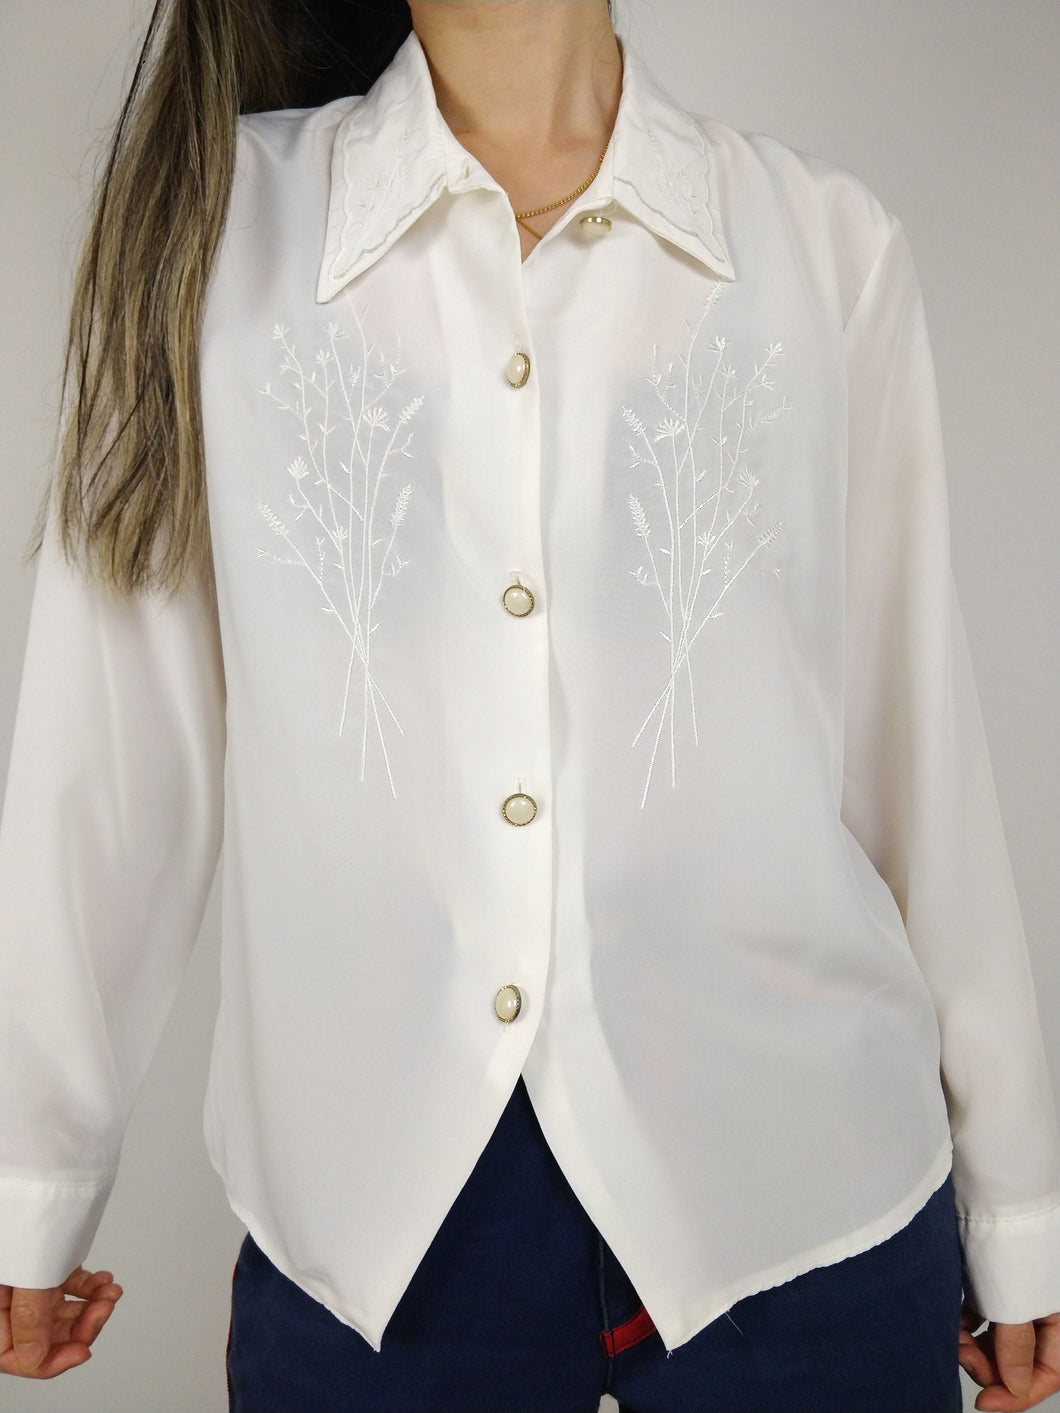 Die weiße Narzisse | Weiße Vintage-Bluse, Statement-Kragen, Brustblume, Blumenstickerei, romantisch, feminin, S